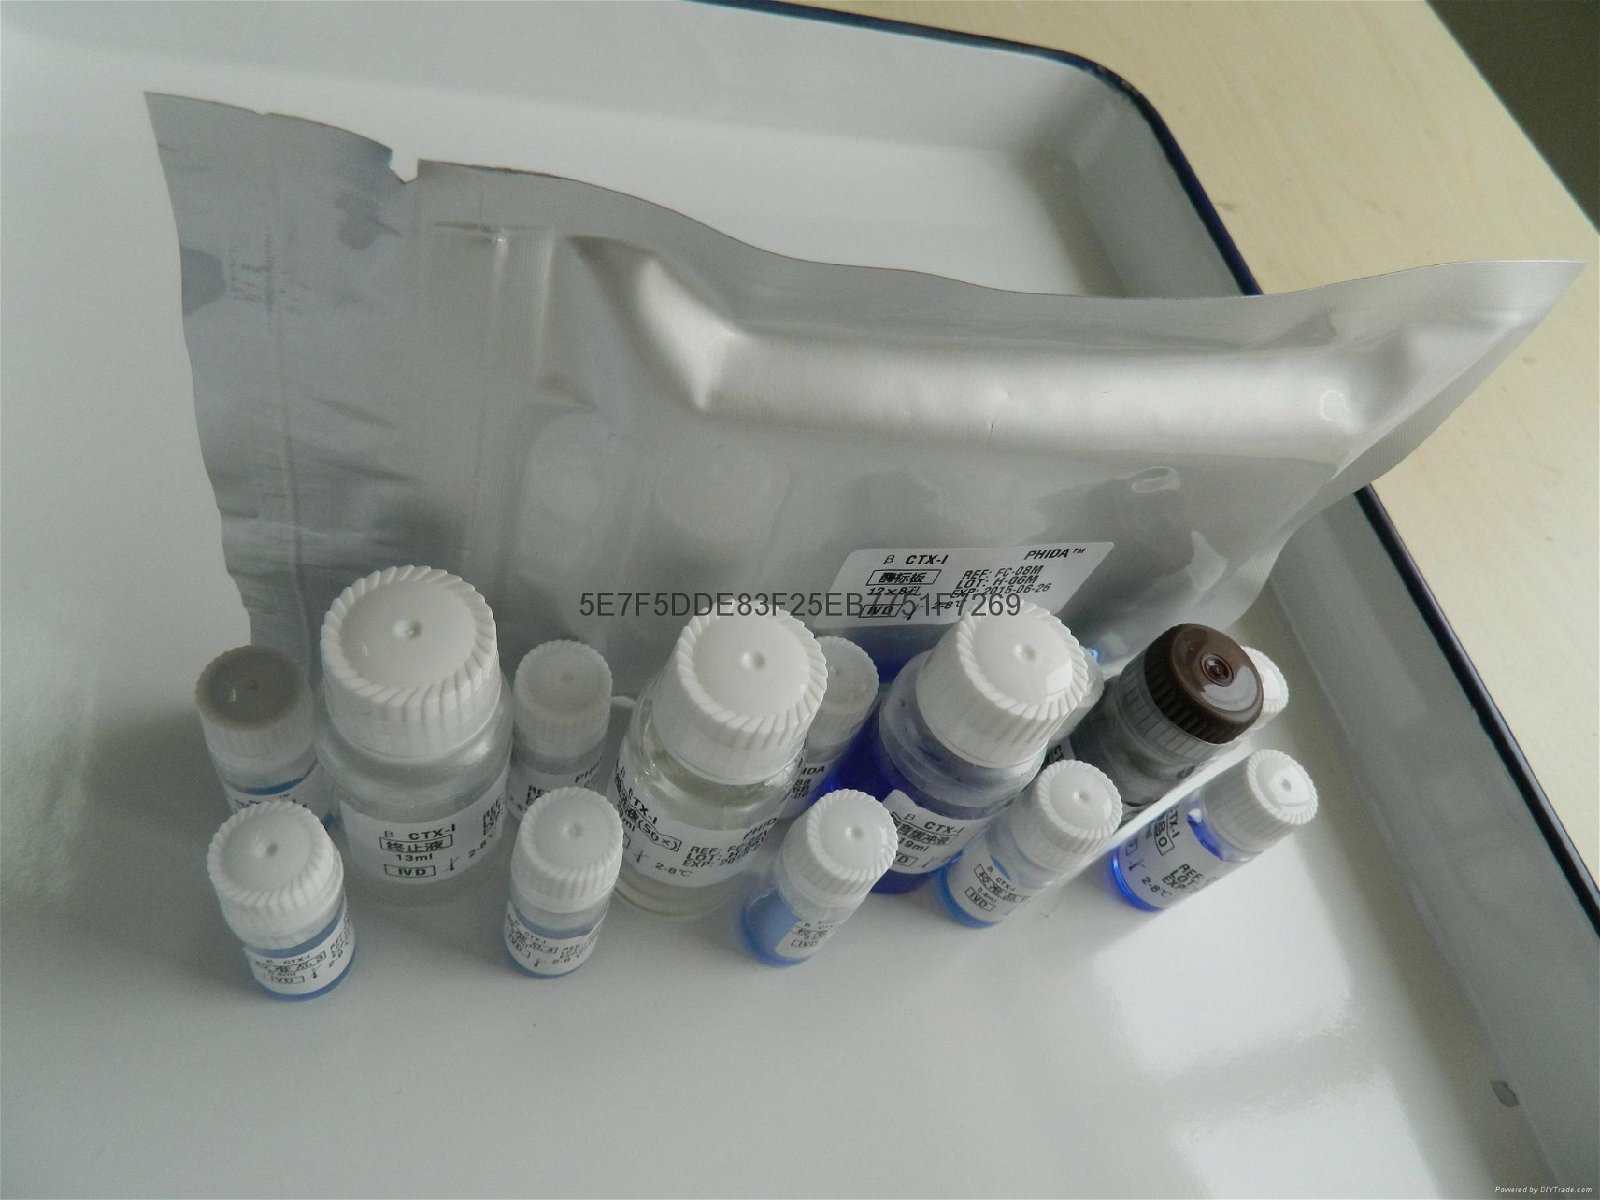  骨鈣素N端中分子片段檢測試劑盒